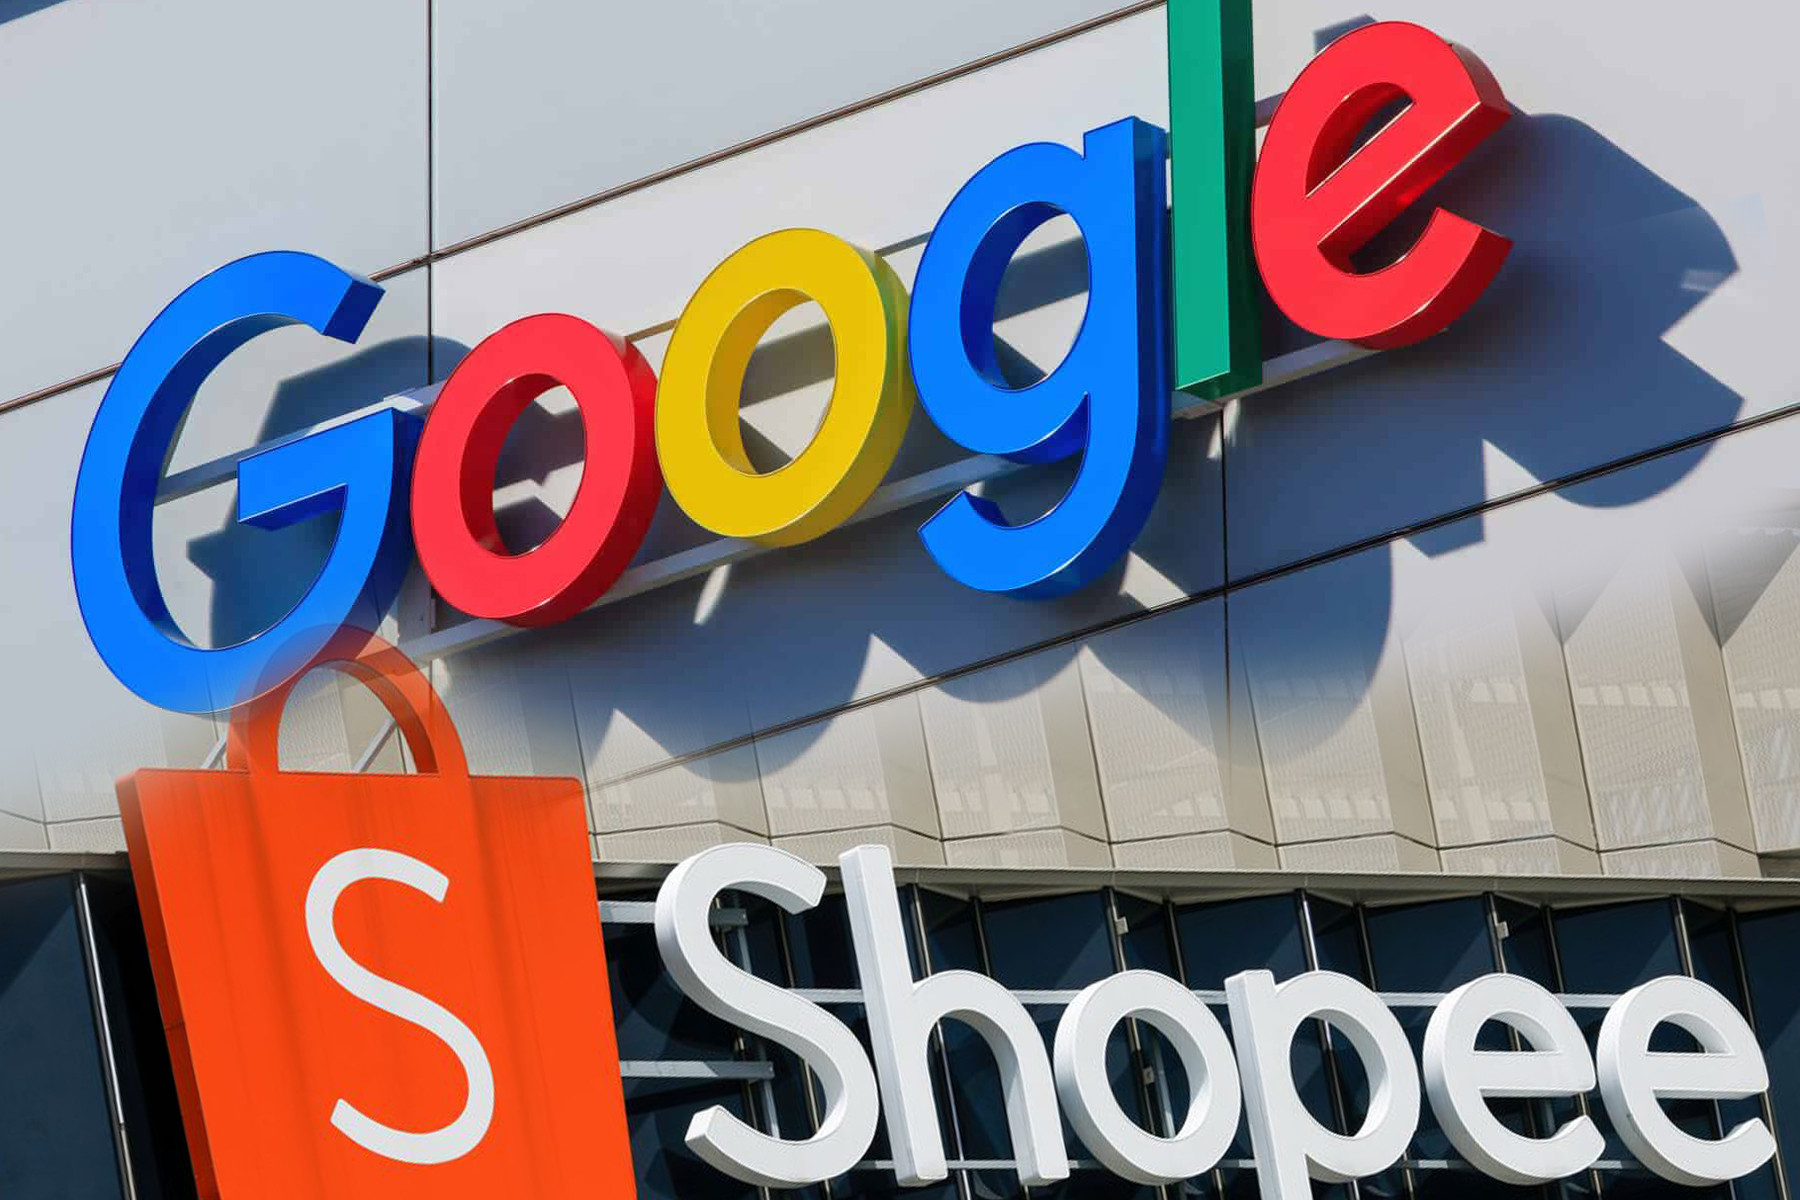 Google tung &apos;vũ khí&apos; AI mới, Shopee lập kỷ lục doanh thu